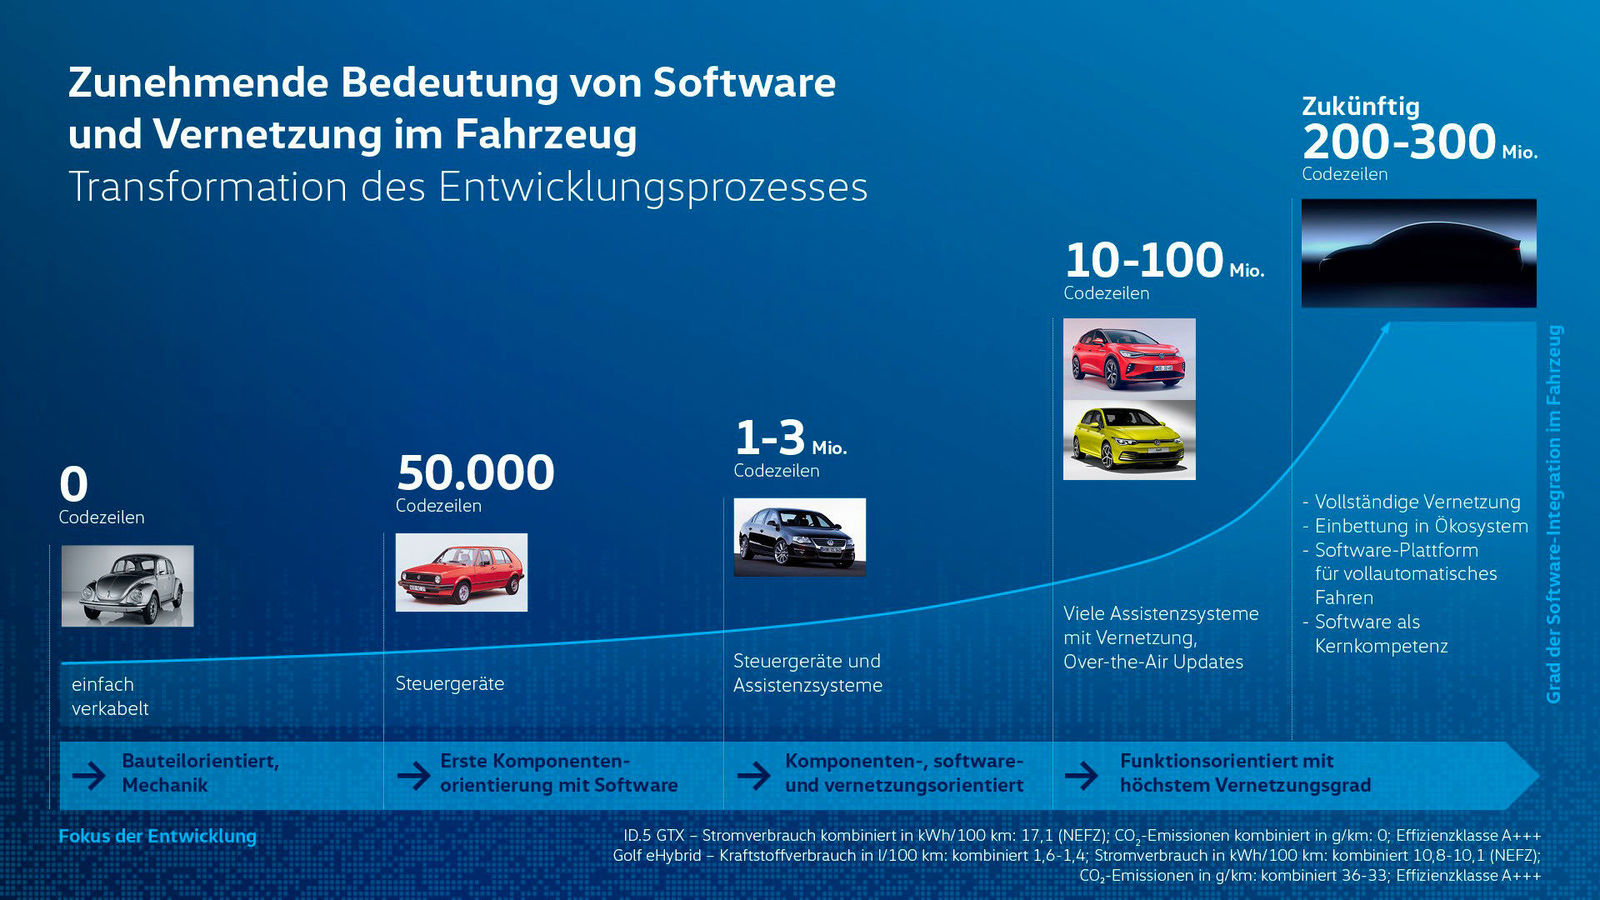 Nachlässigkeiten bei VW-Produktion